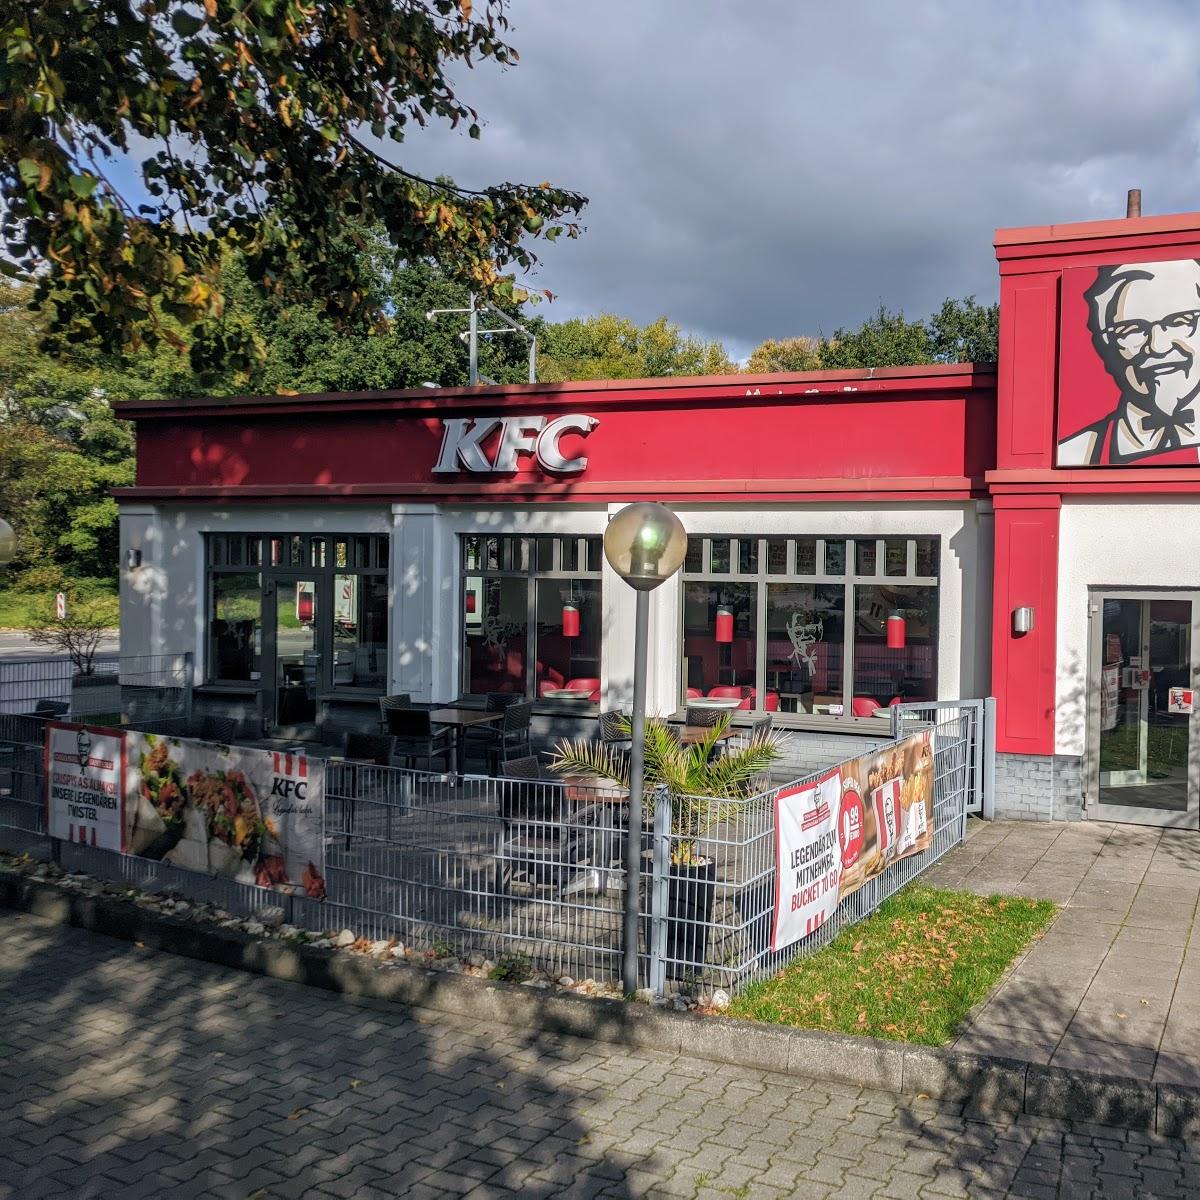 Restaurant "Kentucky Fried Chicken" in Osnabrück